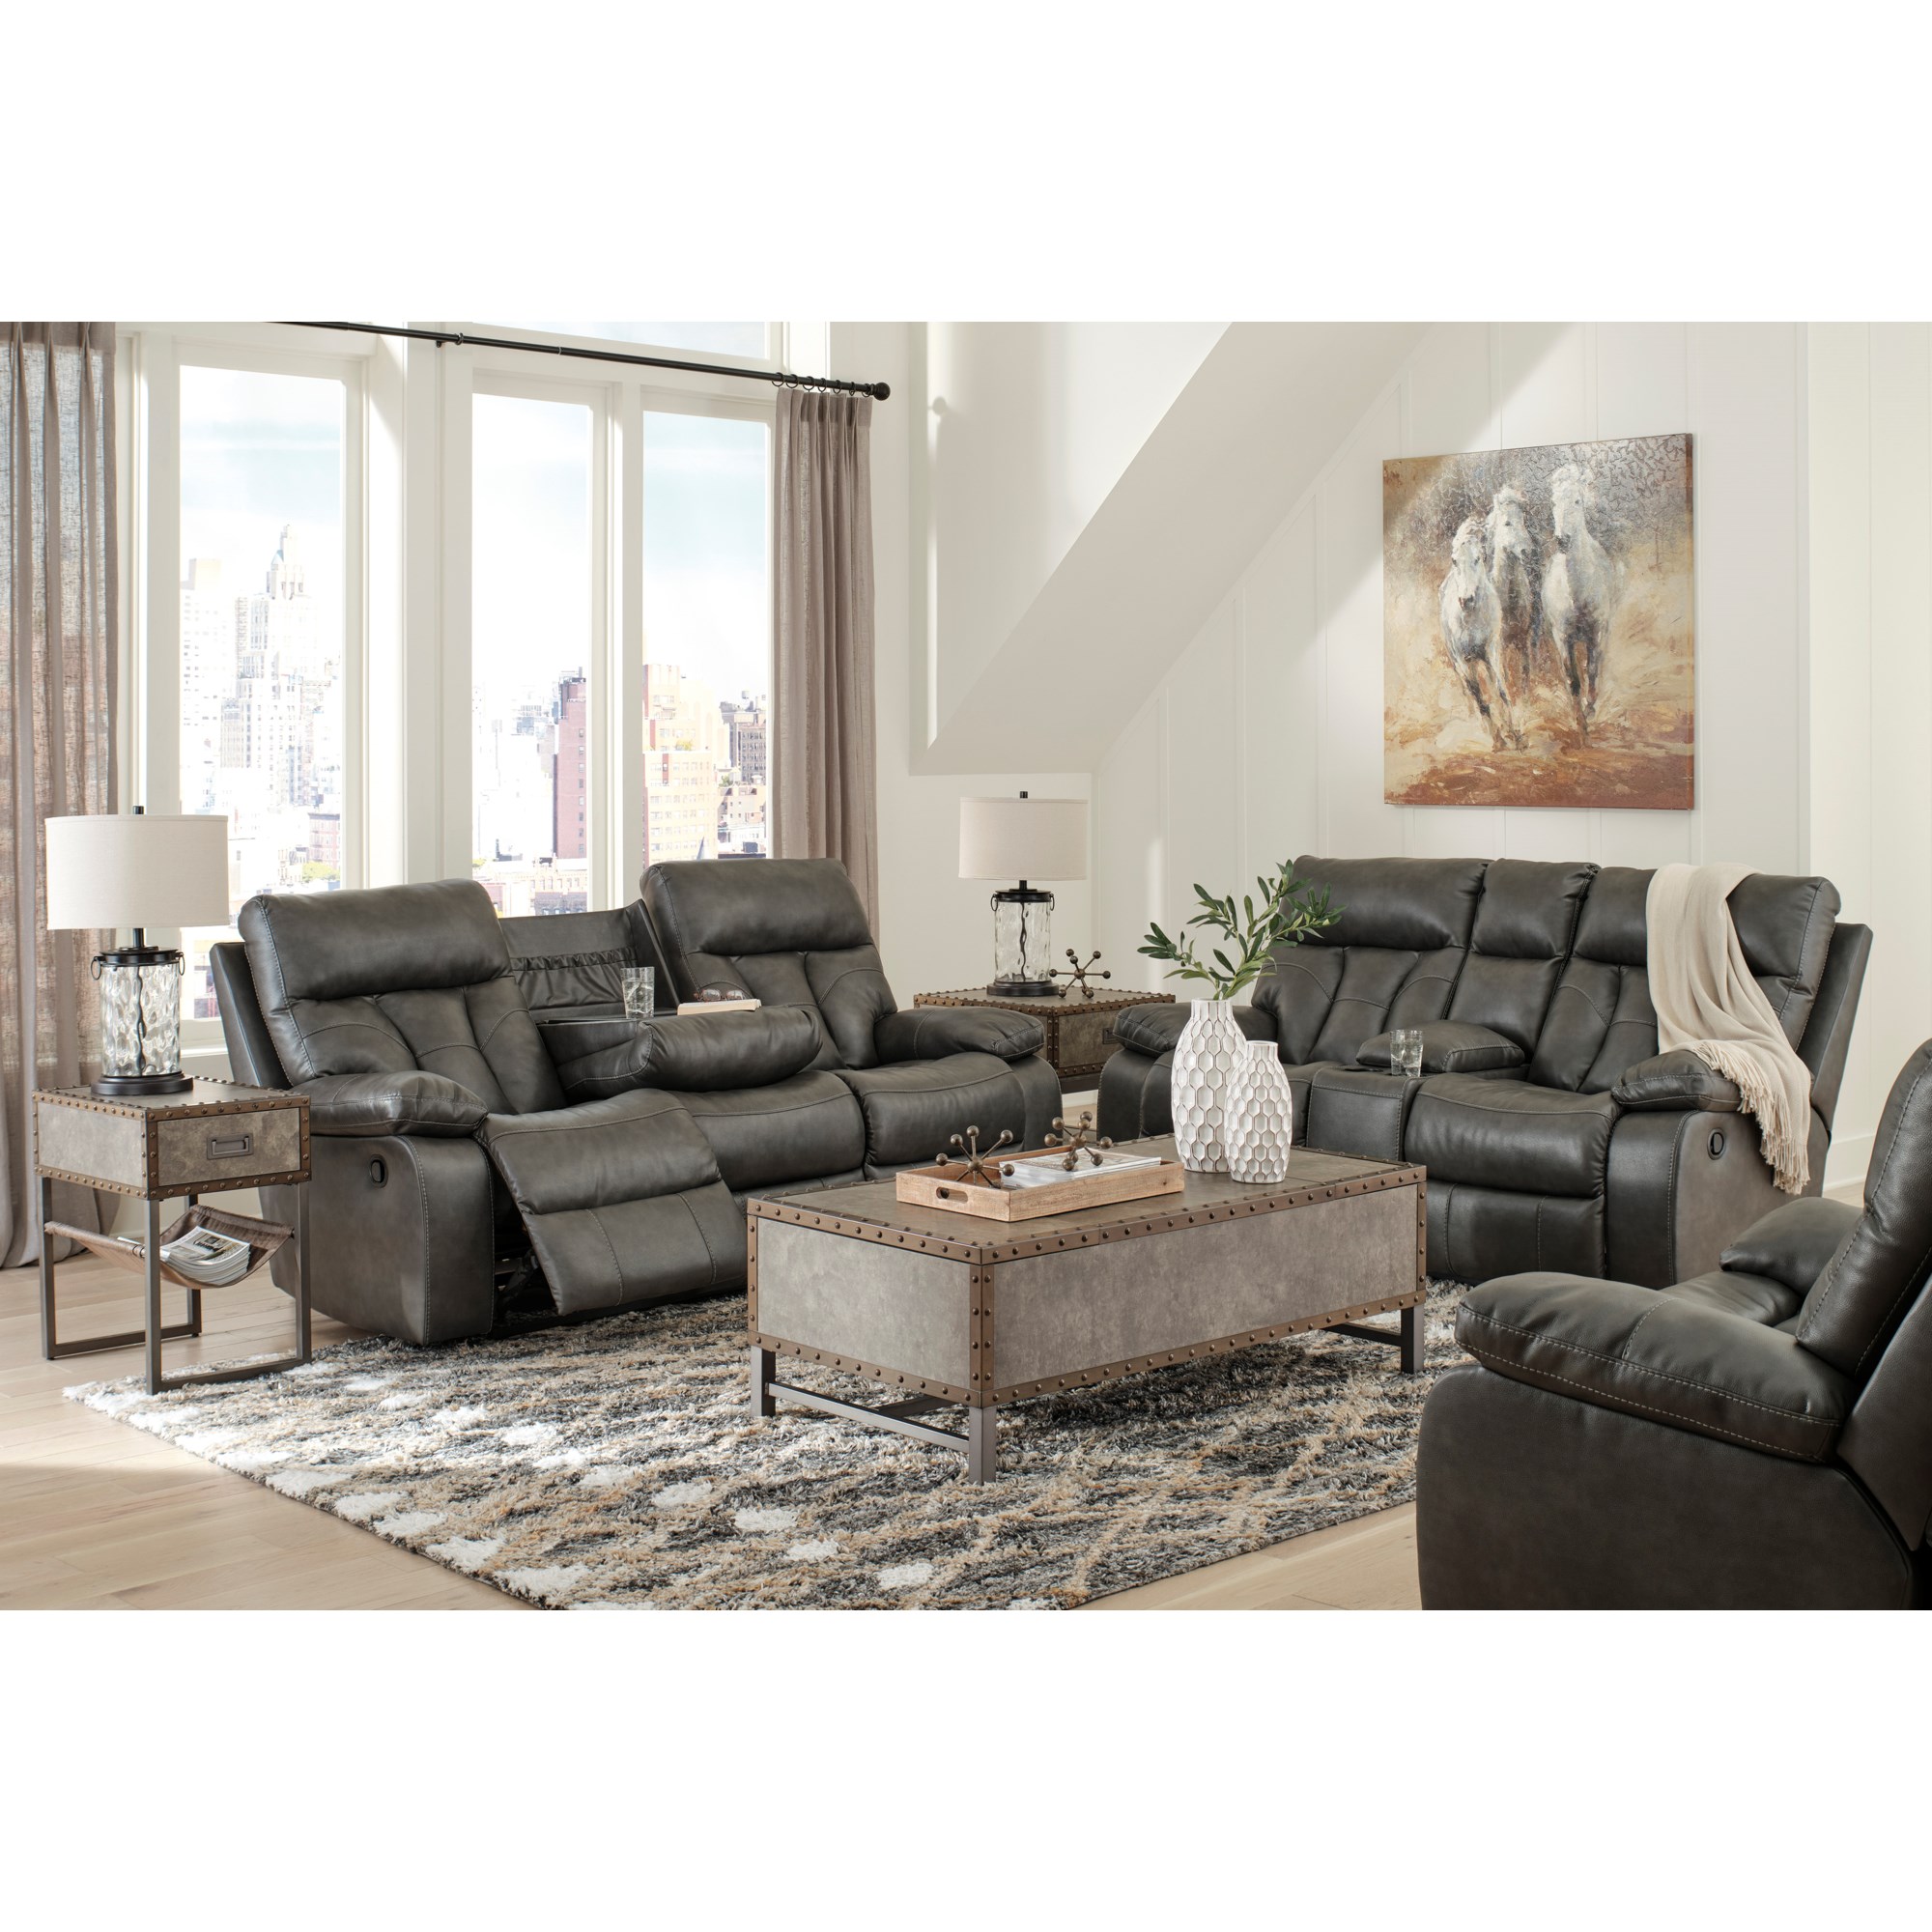 Living Room Furniture - Furniture Mart Colorado - Denver, Northern  Colorado, Fort Morgan, Sterling, CO Living Room Furniture Store